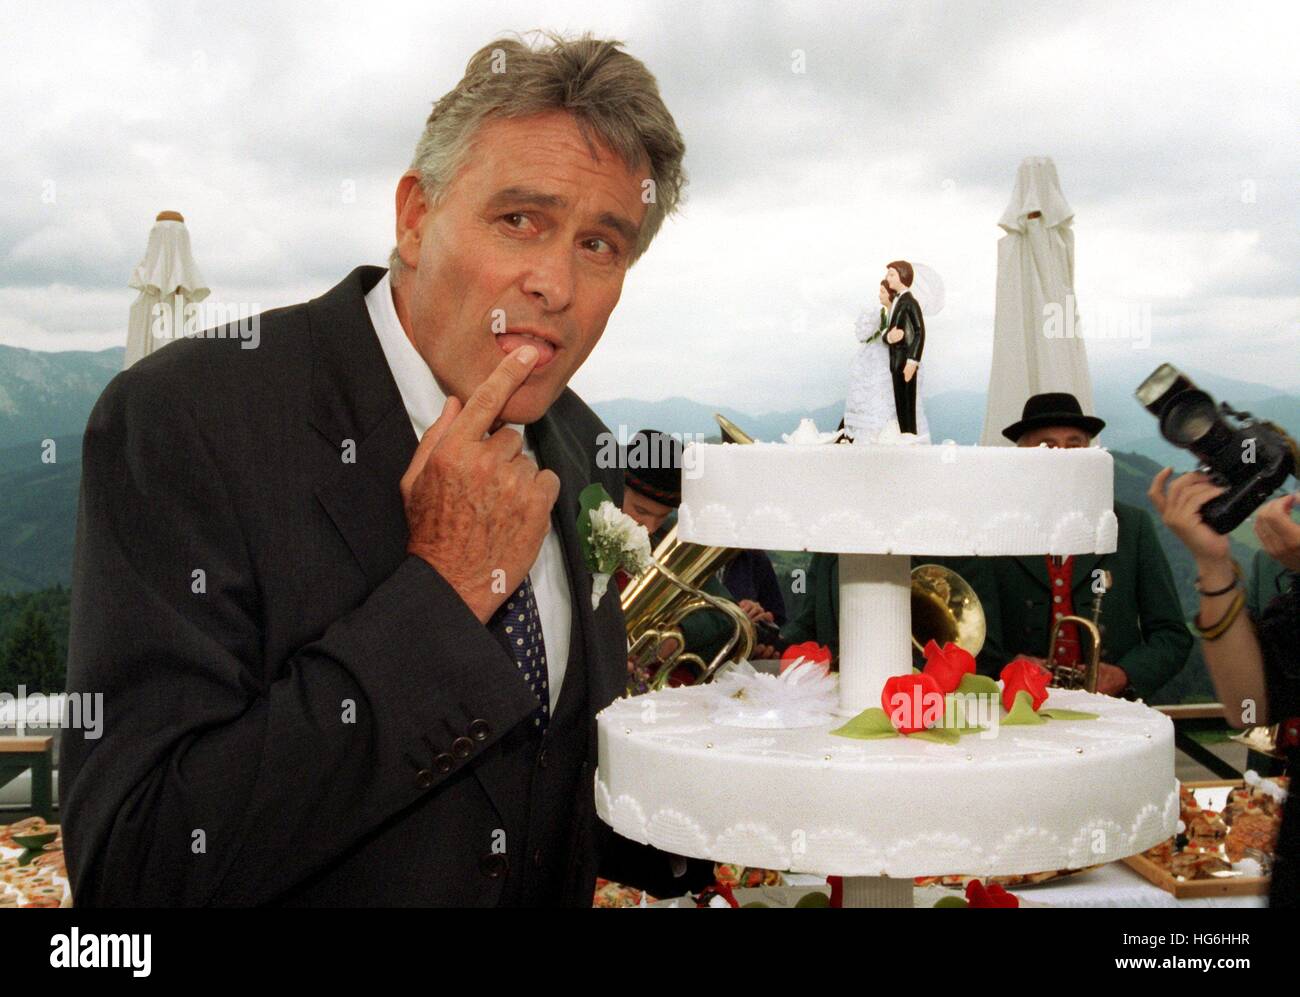 Datei - eine Datei Bild vom 30. Juni 1997 zeigt Schweizer Schauspieler Klaus Wildbolz als Hotelmanager Wenzel Hofer während der Dreharbeiten für die Fernsehserie "Schlosshotel Orth" in Gmunden, Österreich. Klaus Wildbolz ist gestorben. Foto: Ursula Düren/dpa Stockfoto